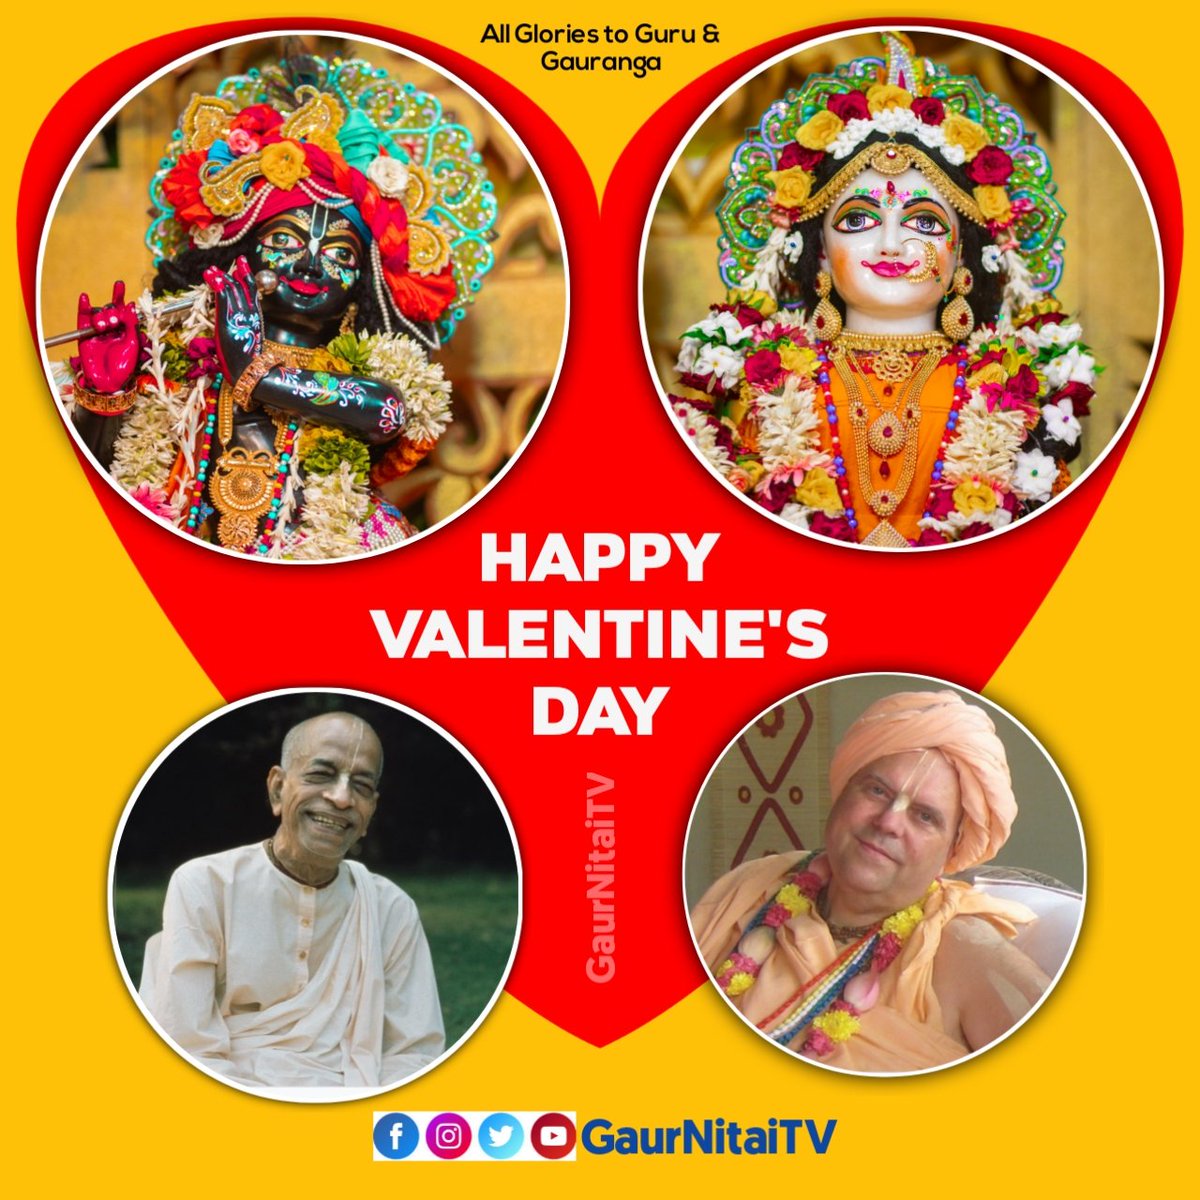 Happy Valentine's Day
.
.
.
.
.
#valentines #valentinesday2023 #GaurNitaiTV #Iskcon #devotional #harekrishnamovement #harekrishna  #ValentinesDayChallenge